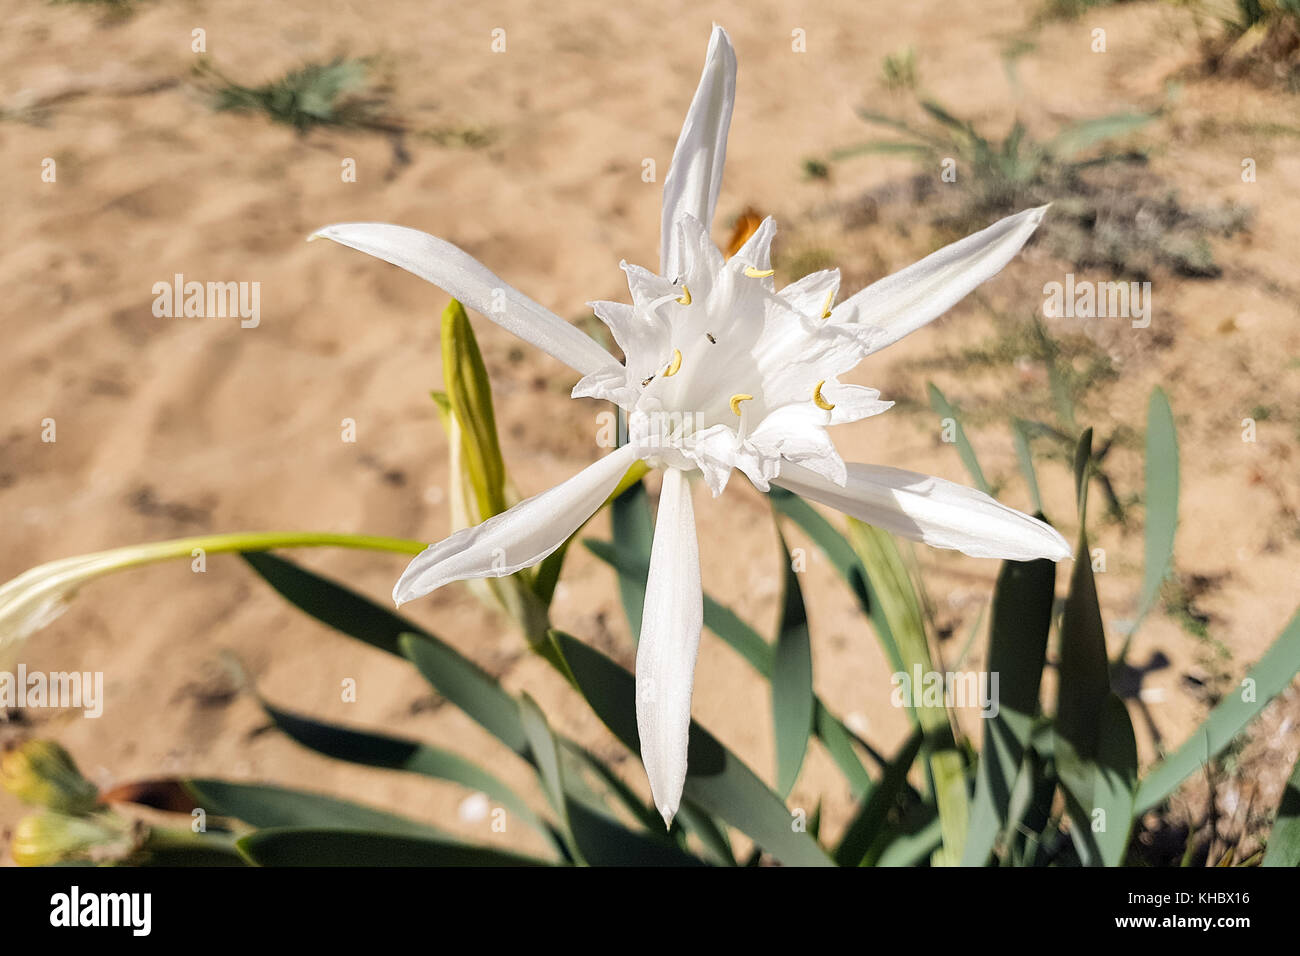 Sea daffodil (Pancratium maritimum), Majorca, Spain Stock Photo